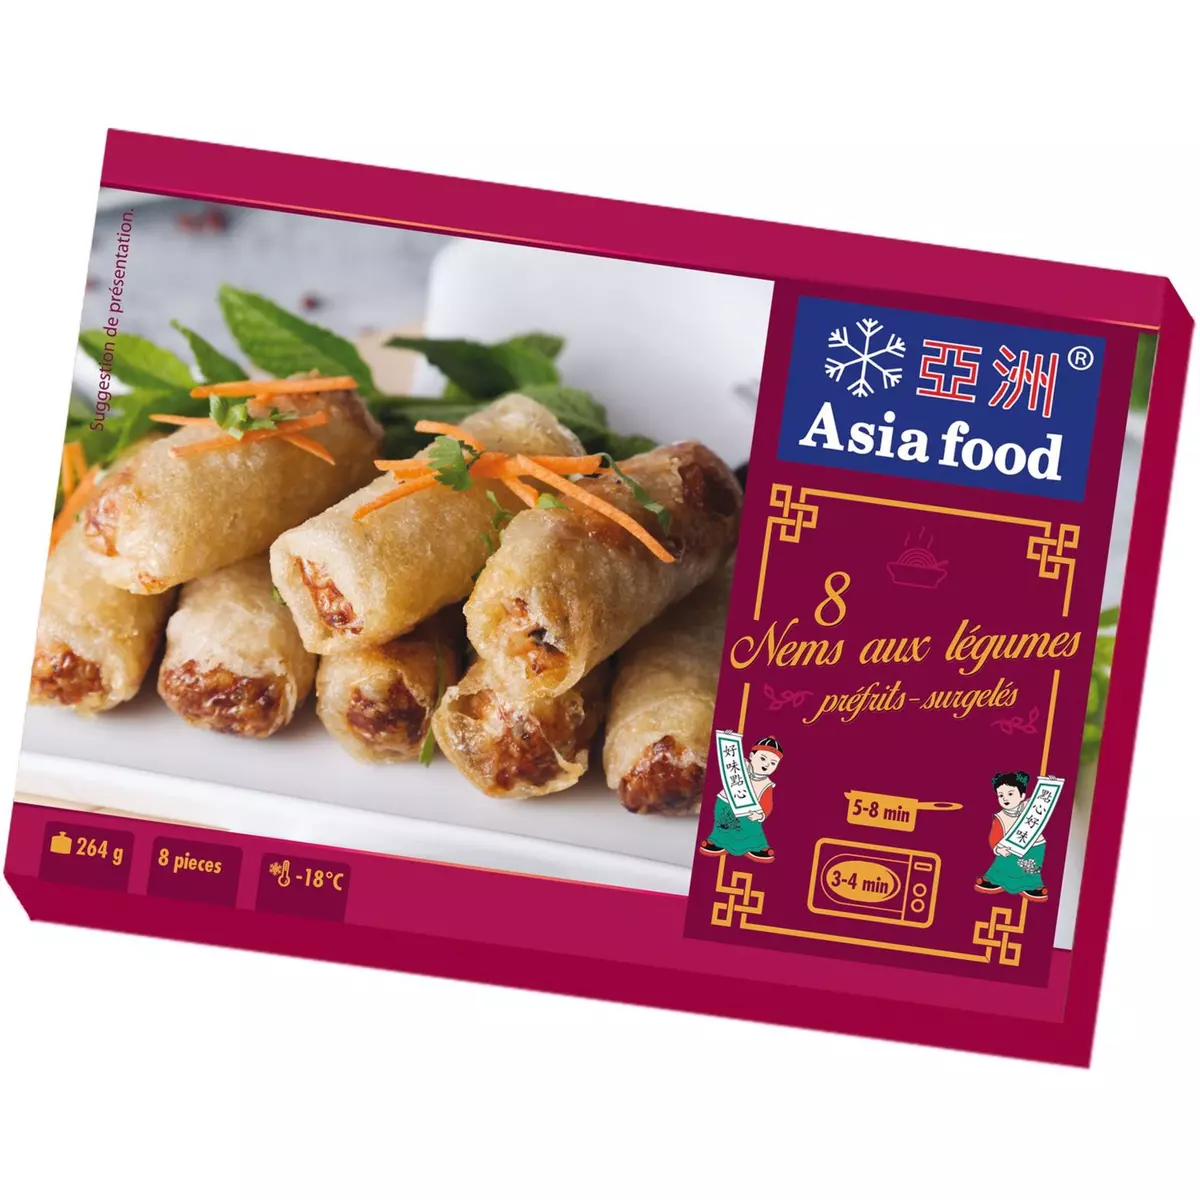 ASIA FOOD Nems aux légumes et sauce 8 pièces 264g